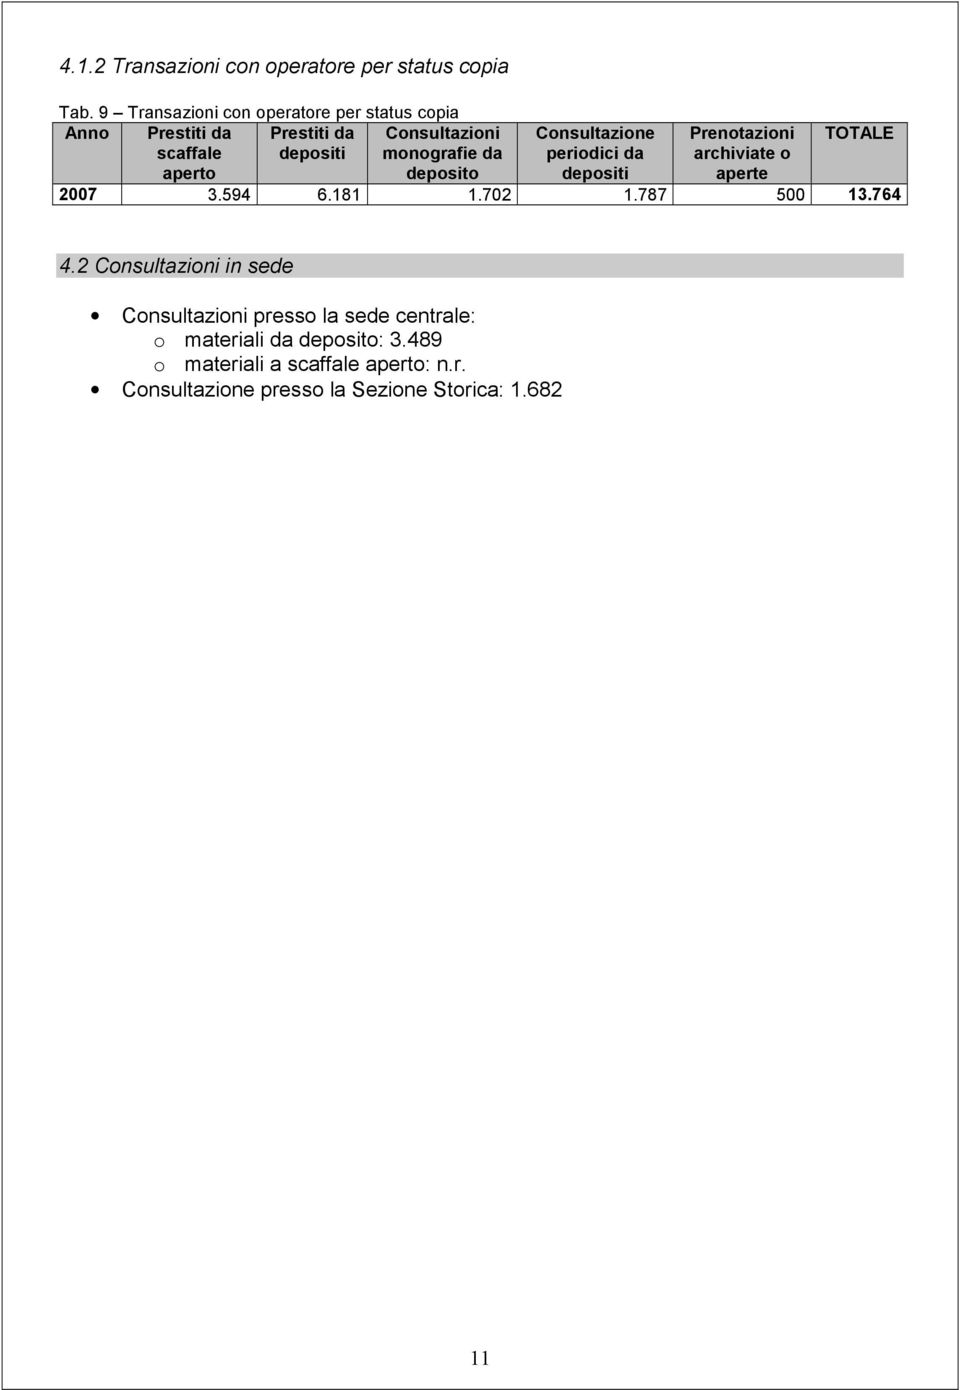 monografie da deposito Consultazione periodici da depositi Prenotazioni archiviate o aperte TOTALE 2007 3.594 6.181 1.